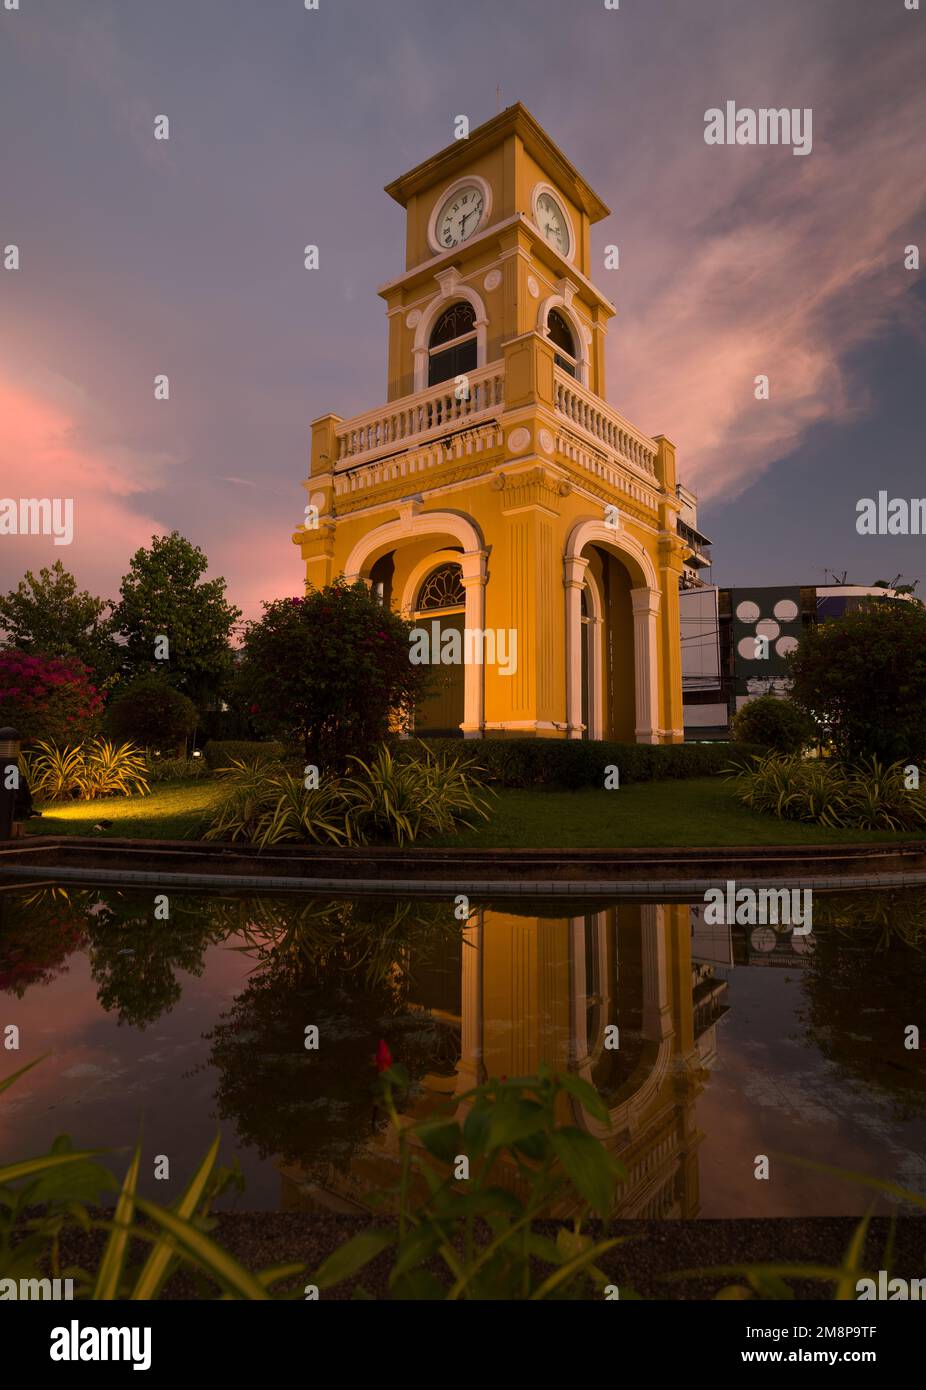 Città vecchia di Phuket. Famoso edificio della torre dell'orologio a sera. Architettura sino-portoghese. Destinazioni di viaggio principali in Thailandia Foto Stock